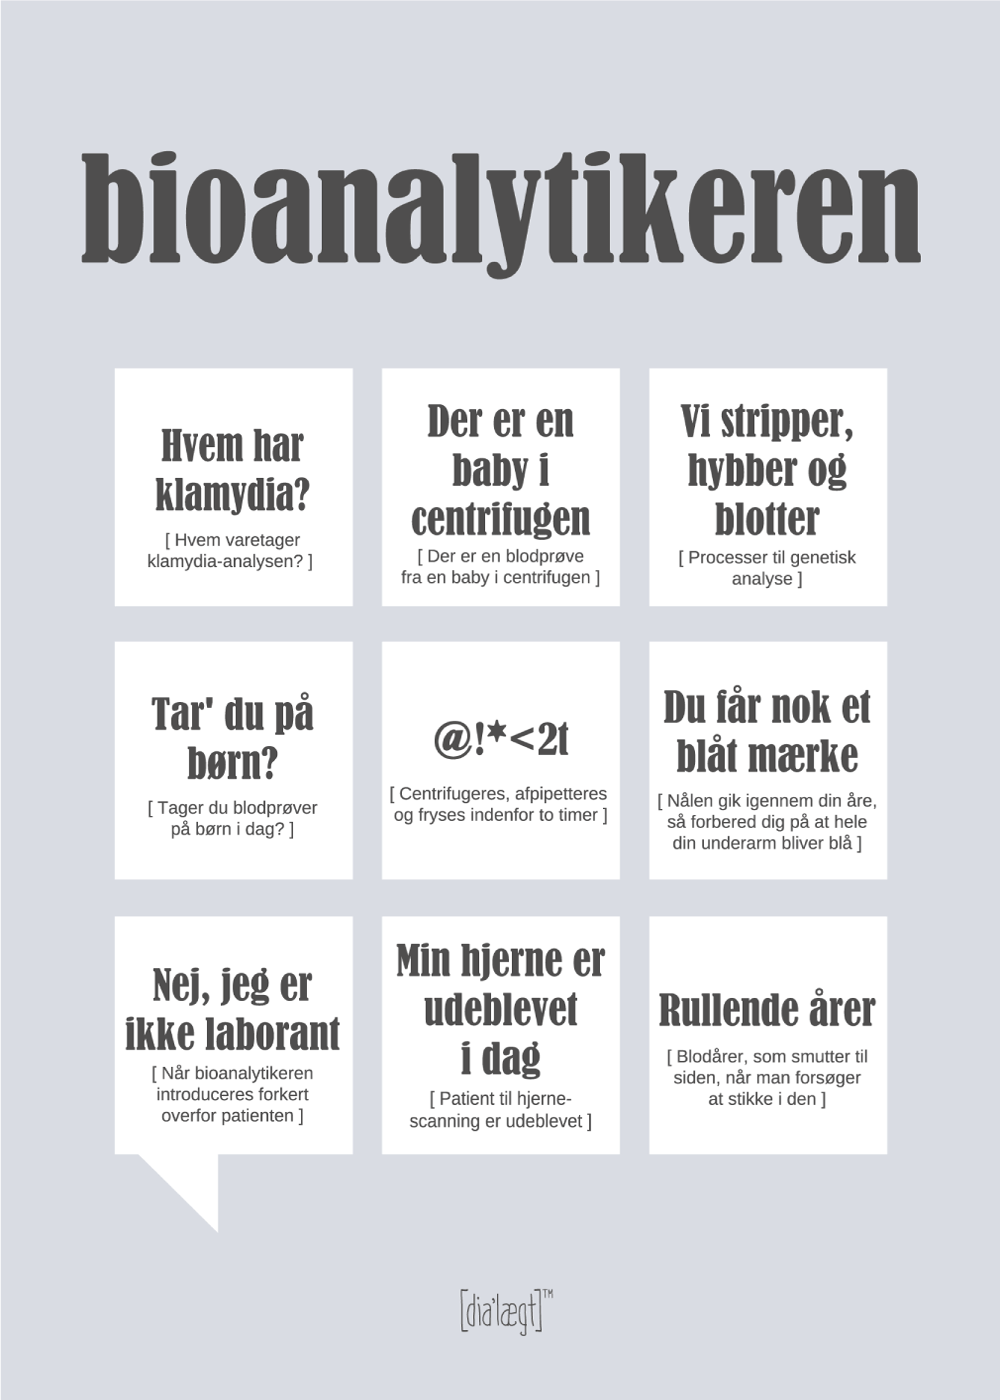 Bioanalytikeren plakat